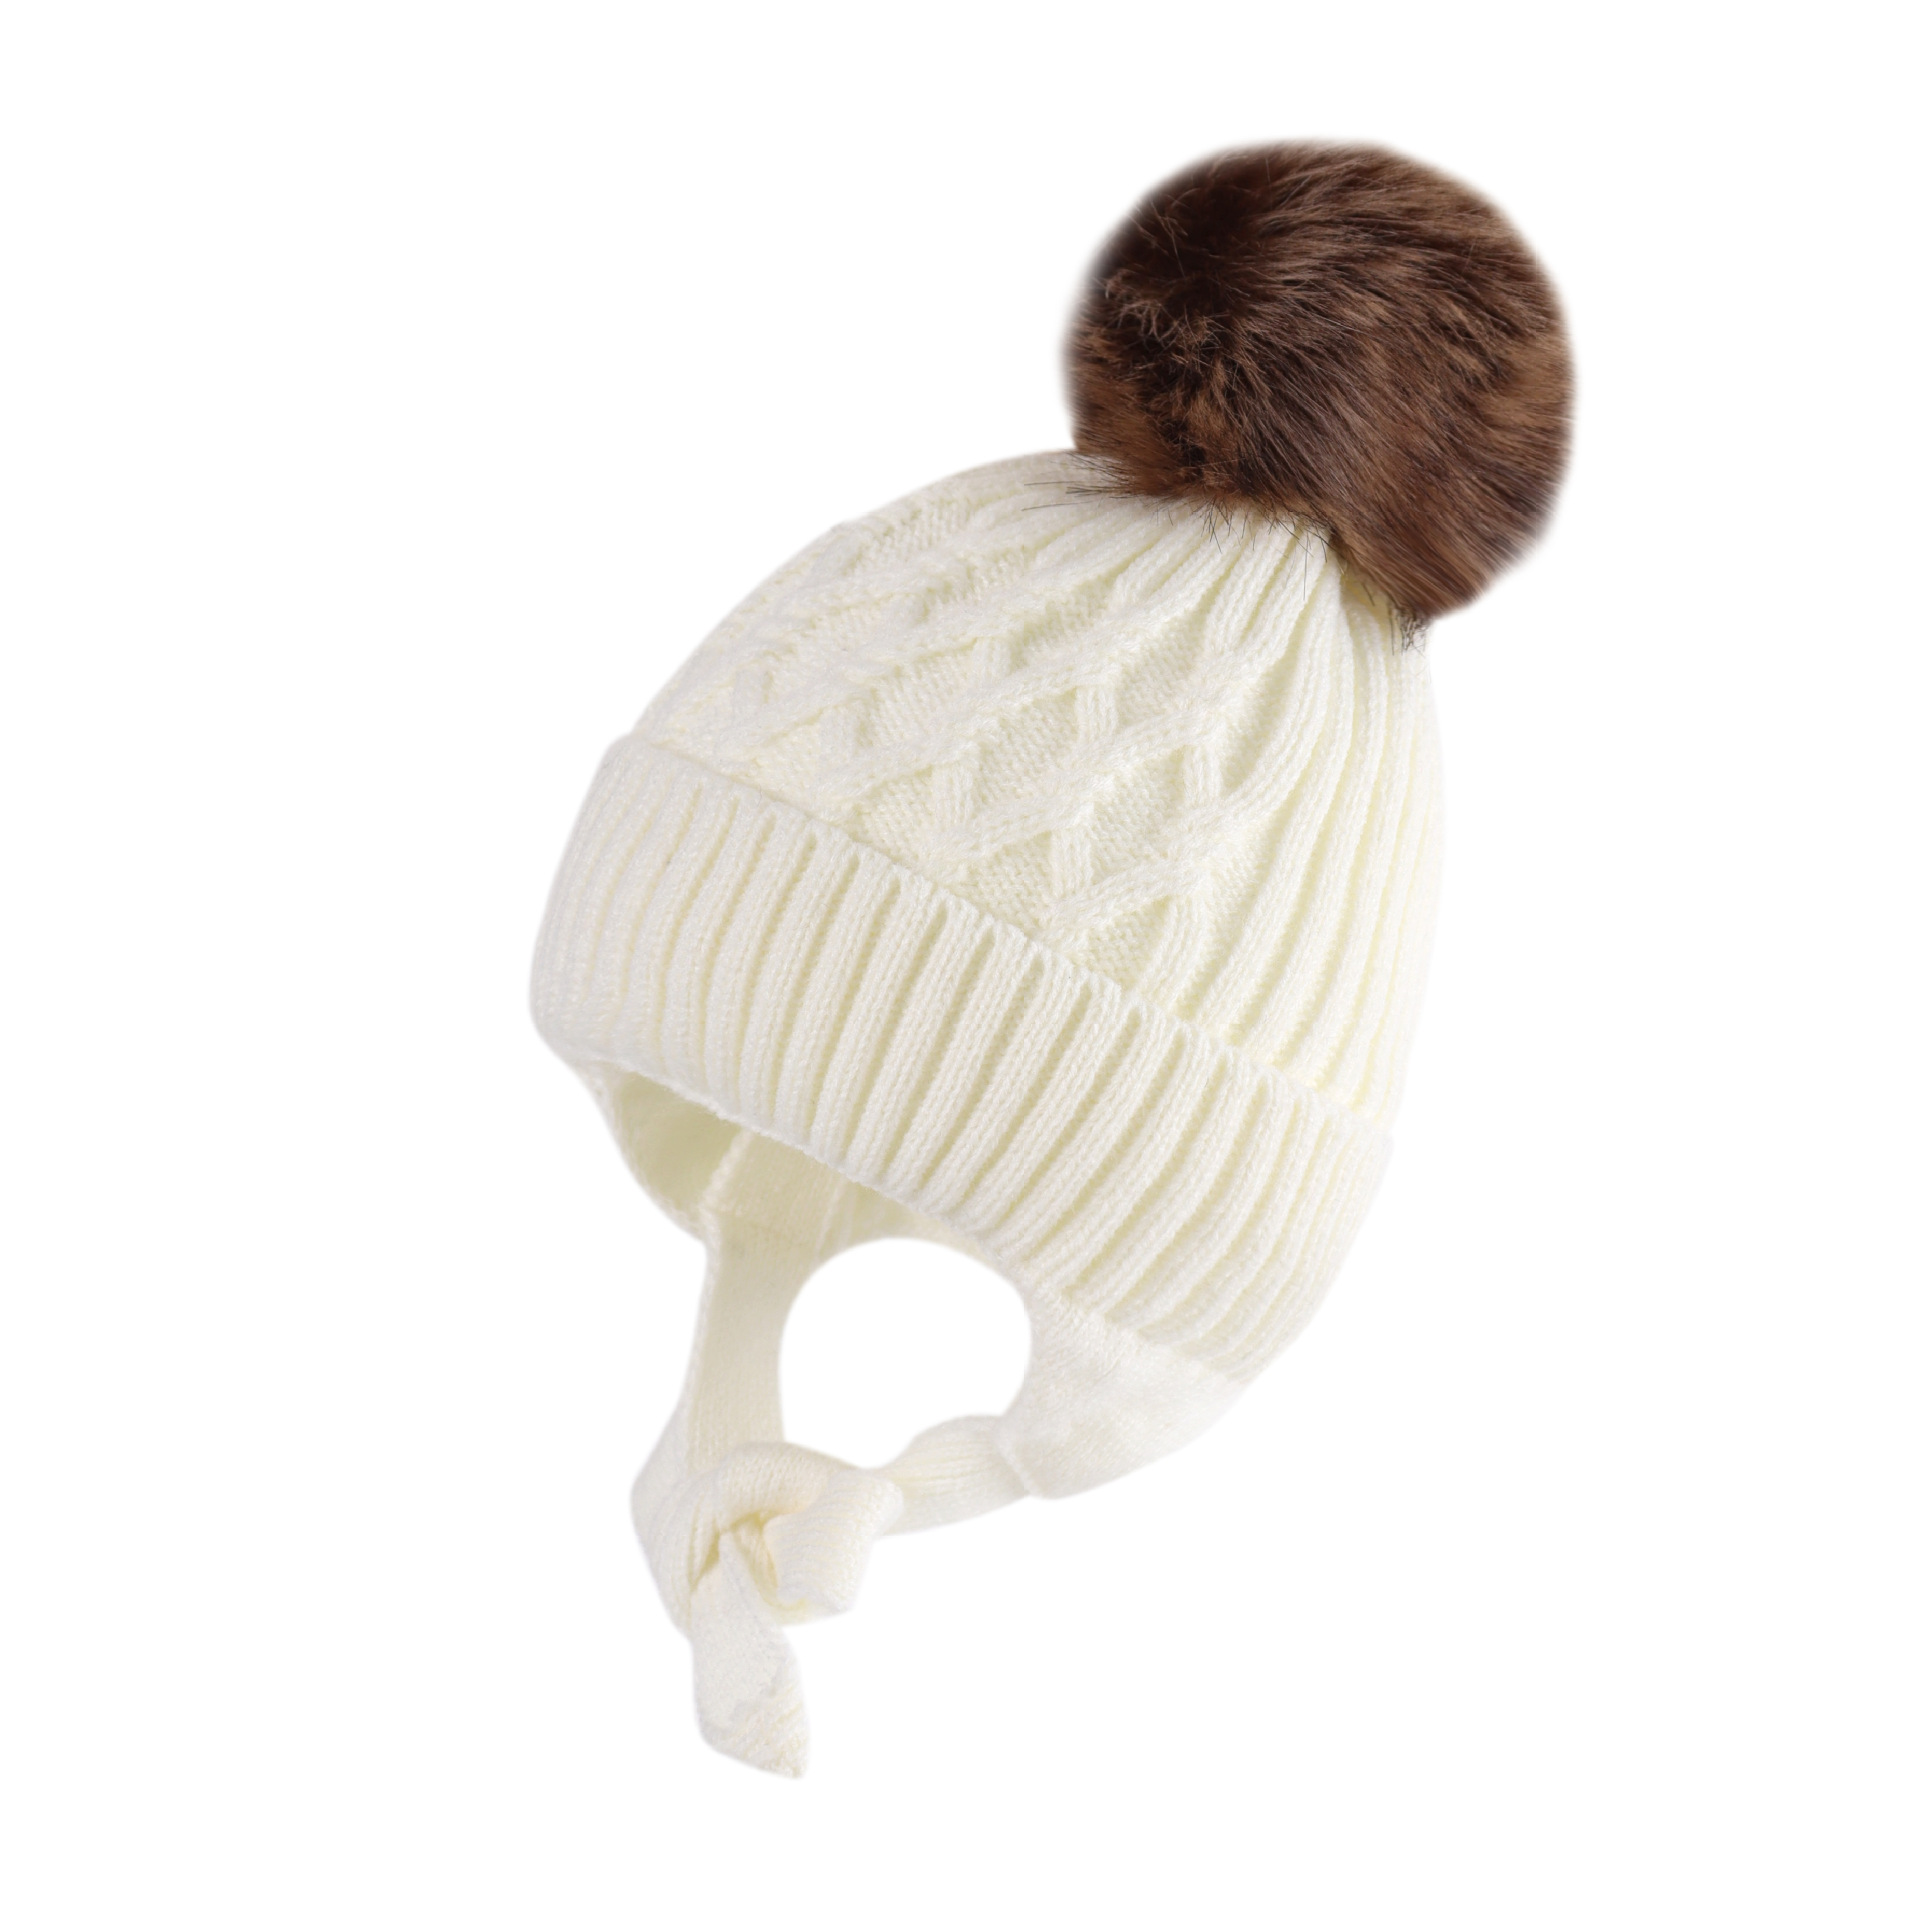 Plush wool hat na may maraming gamit na windproof na ear protector at headgear